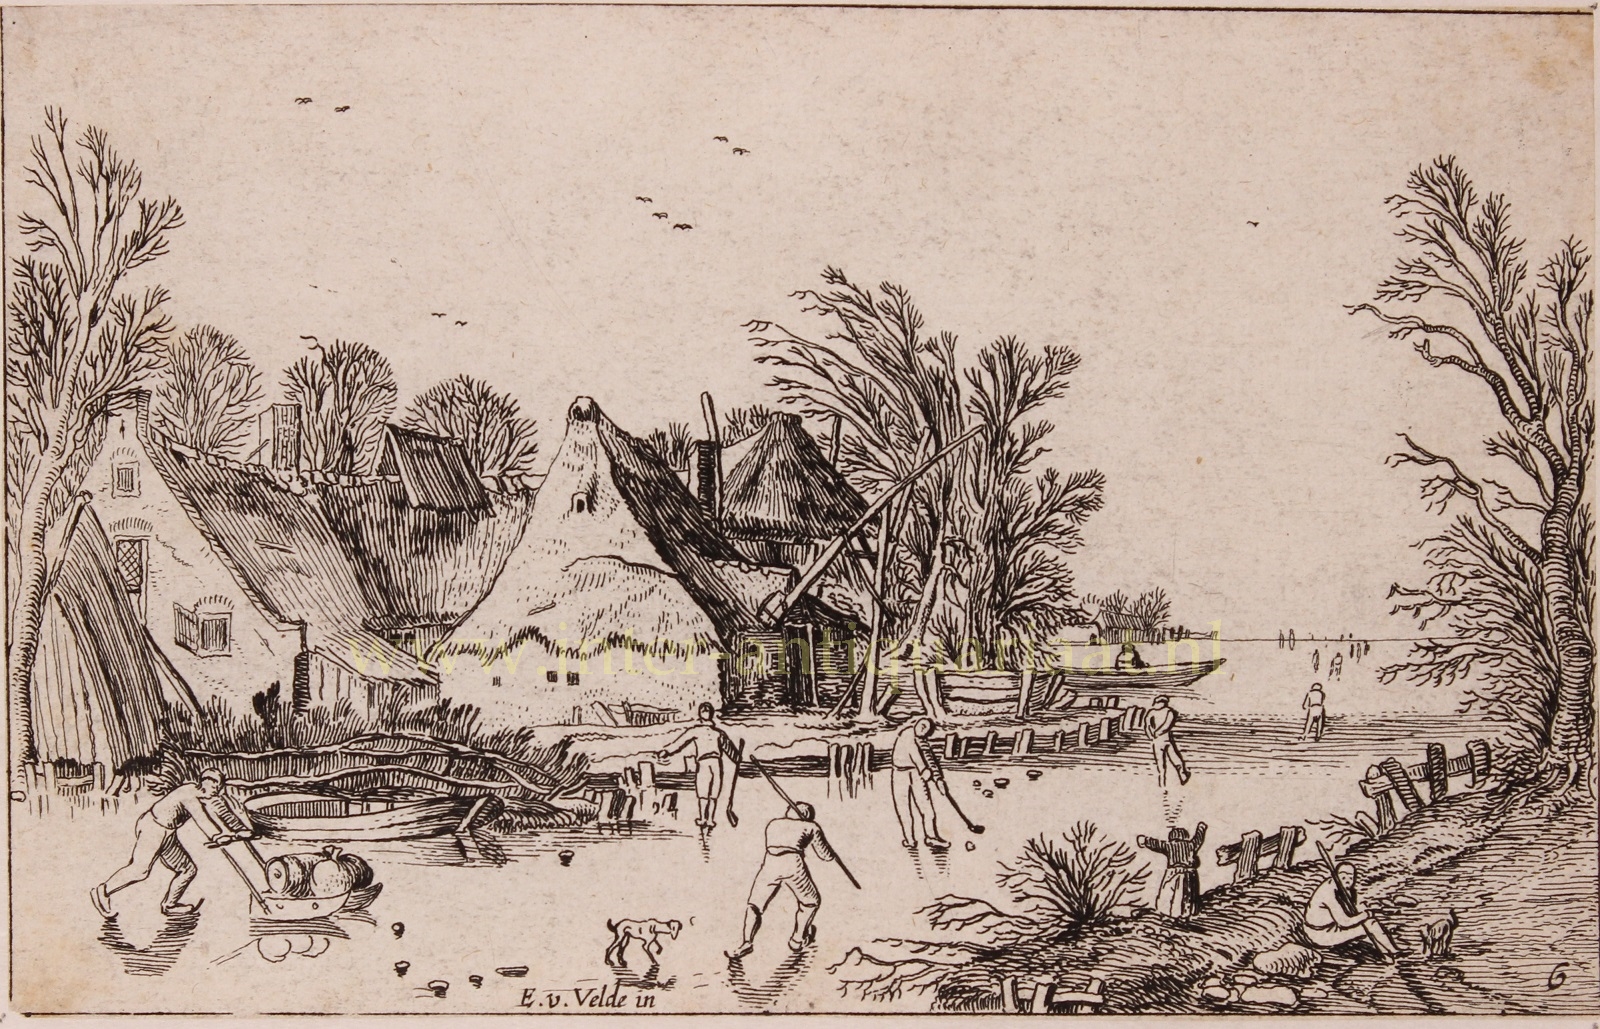 Velde-- Esaias van de (1591 - 1630) - Dutch winter landscape - Esaias van de Velde, 1614